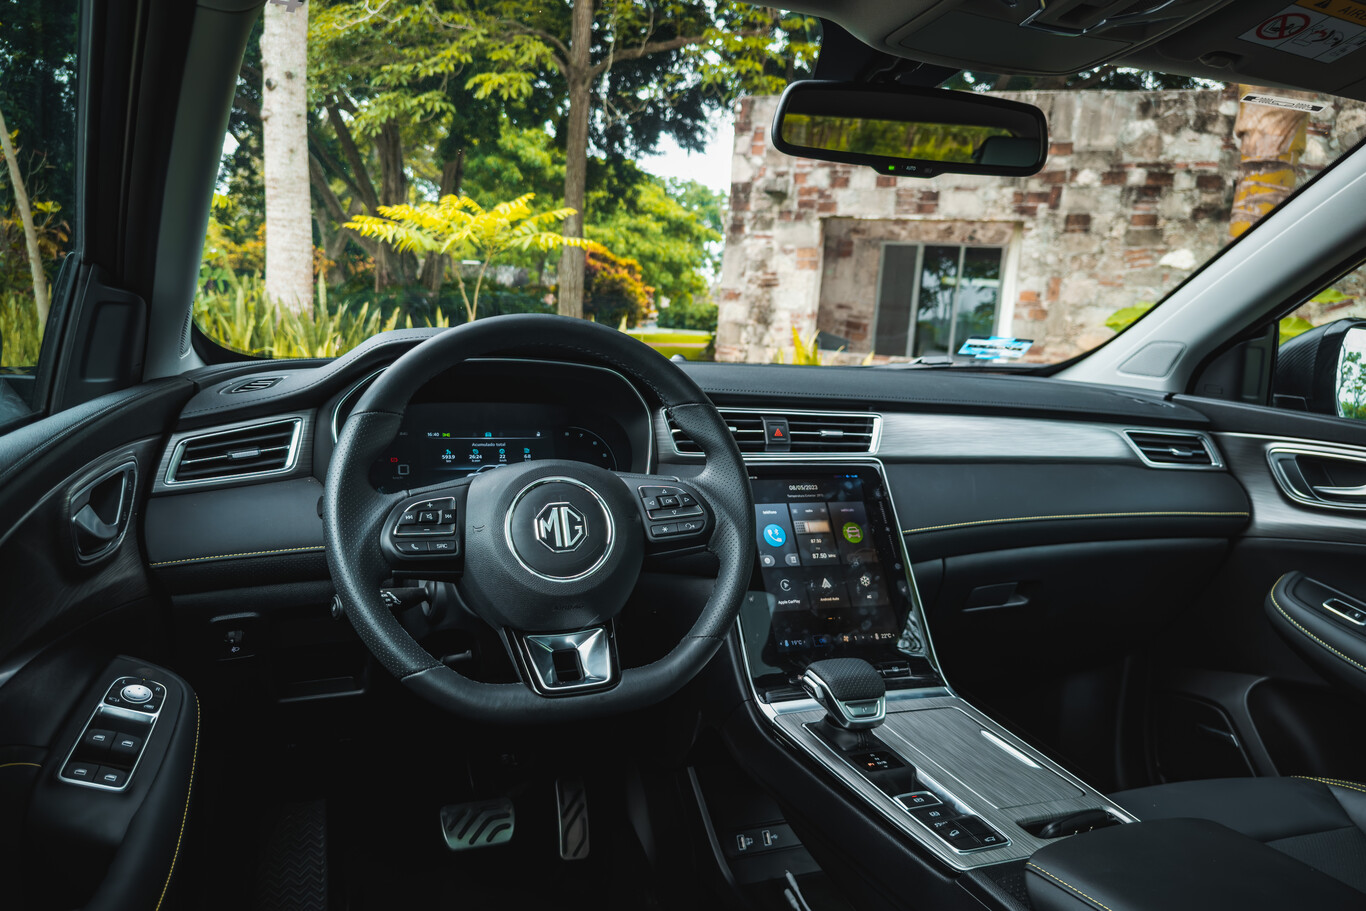 Sales tiết lộ giá bán của MG RX5 sắp ra mắt: Chỉ 650 triệu đồng, rẻ ngang SUV cỡ B - Ảnh 5.